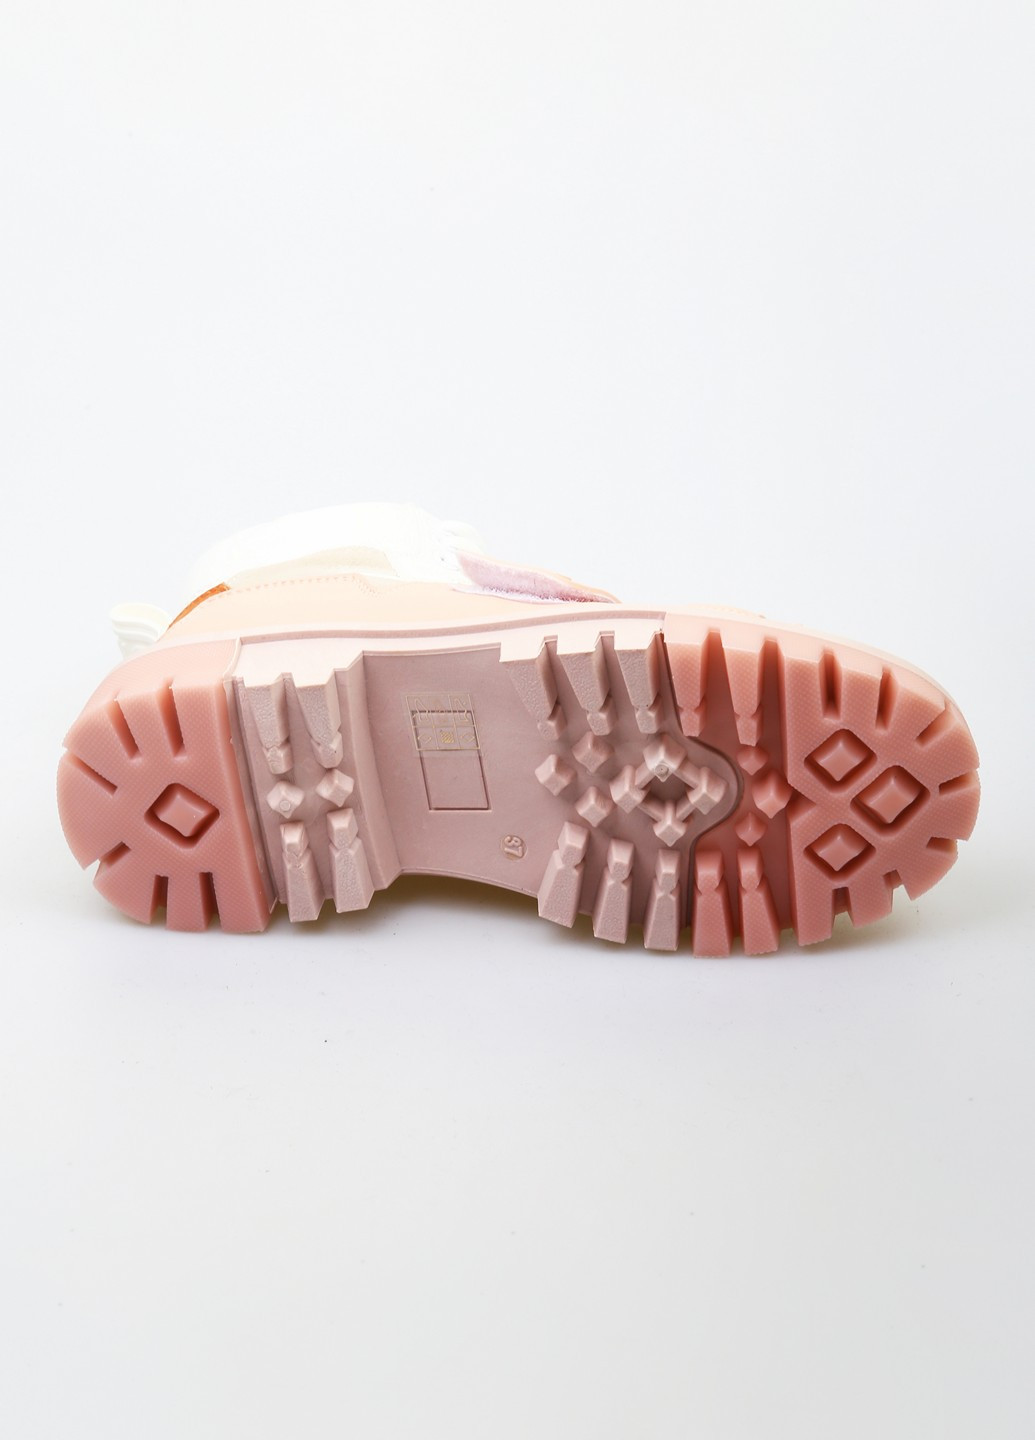 Зимние ботинки Horoso из искусственной кожи